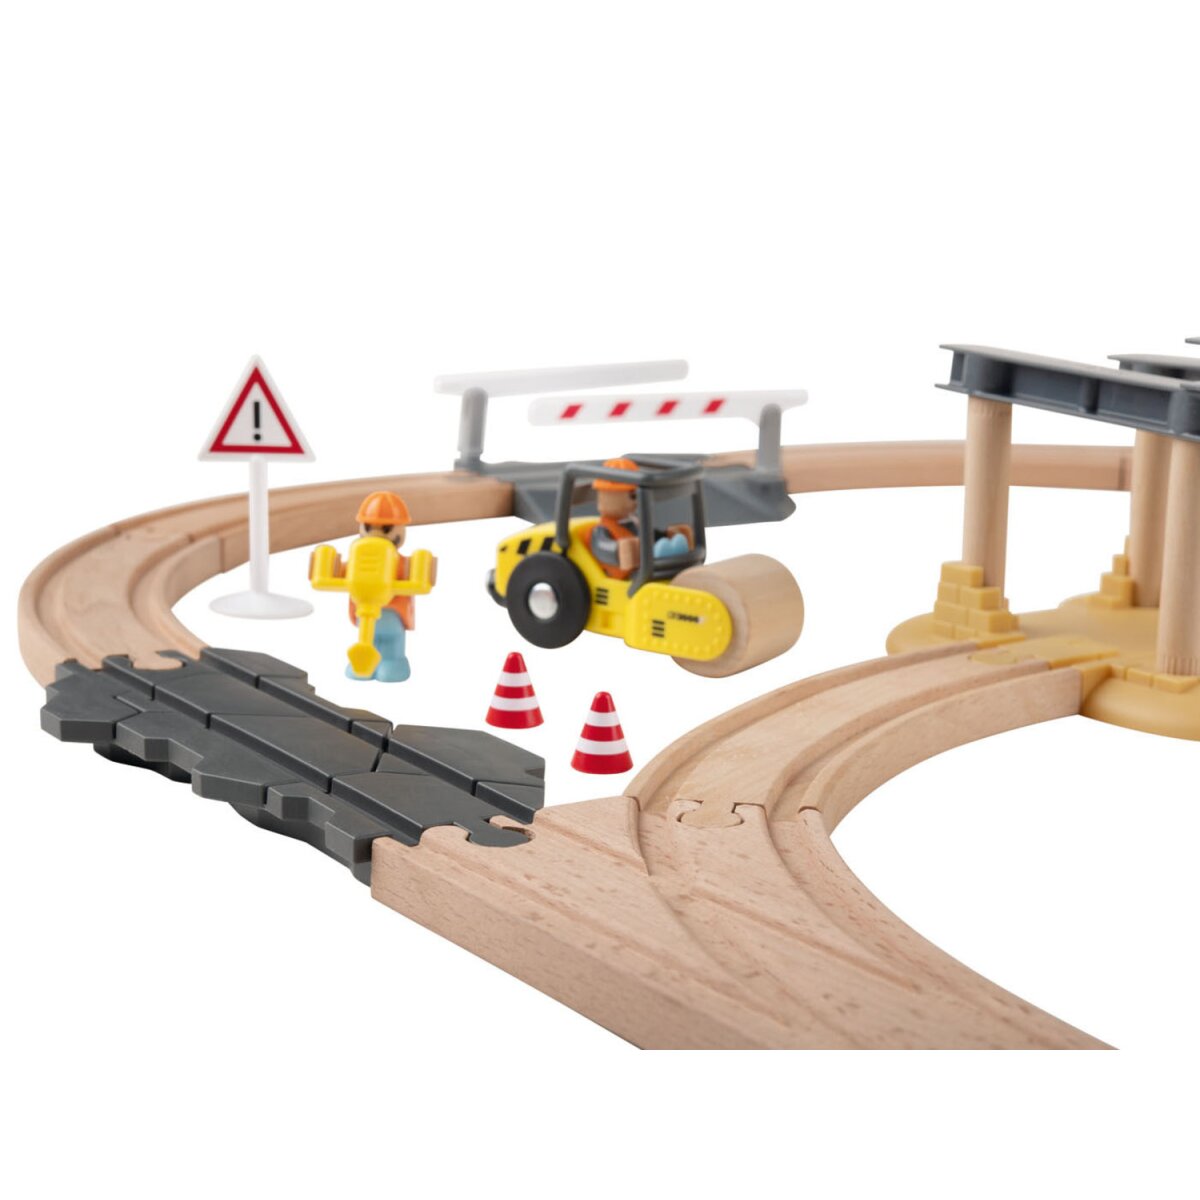 Playtive Holz-Eisenbahn-Set Baustelle, mit Buchenholz - B-Ware gut, 24,99 €